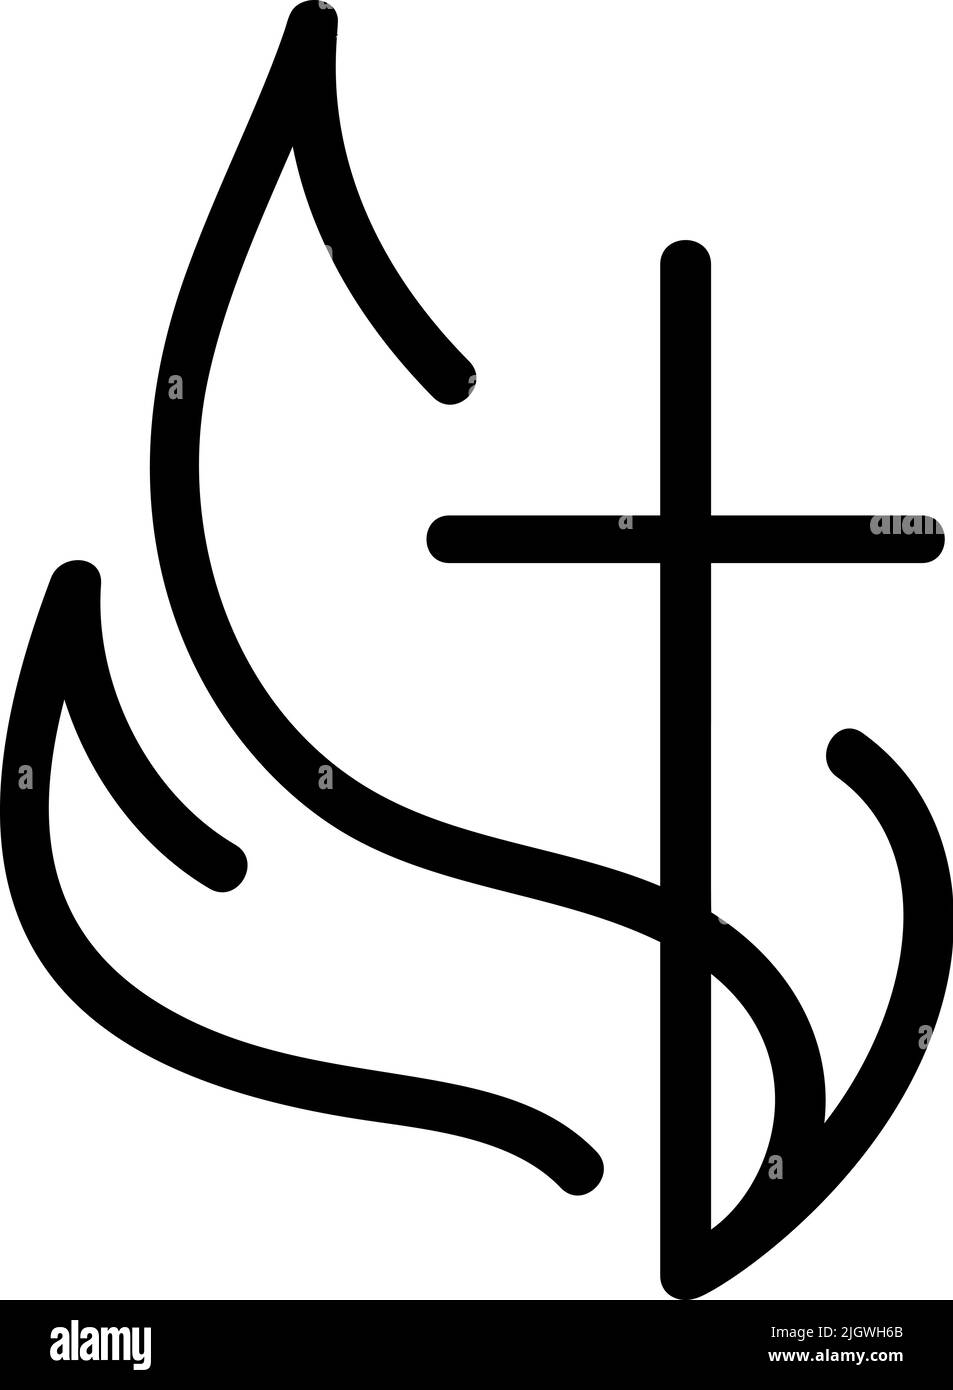 Vecteur Christian logo coeur monoline avec la croix et le feu sur un fond blanc. Symbole calligraphique dessiné à la main. Icône de religion minimaliste Illustration de Vecteur